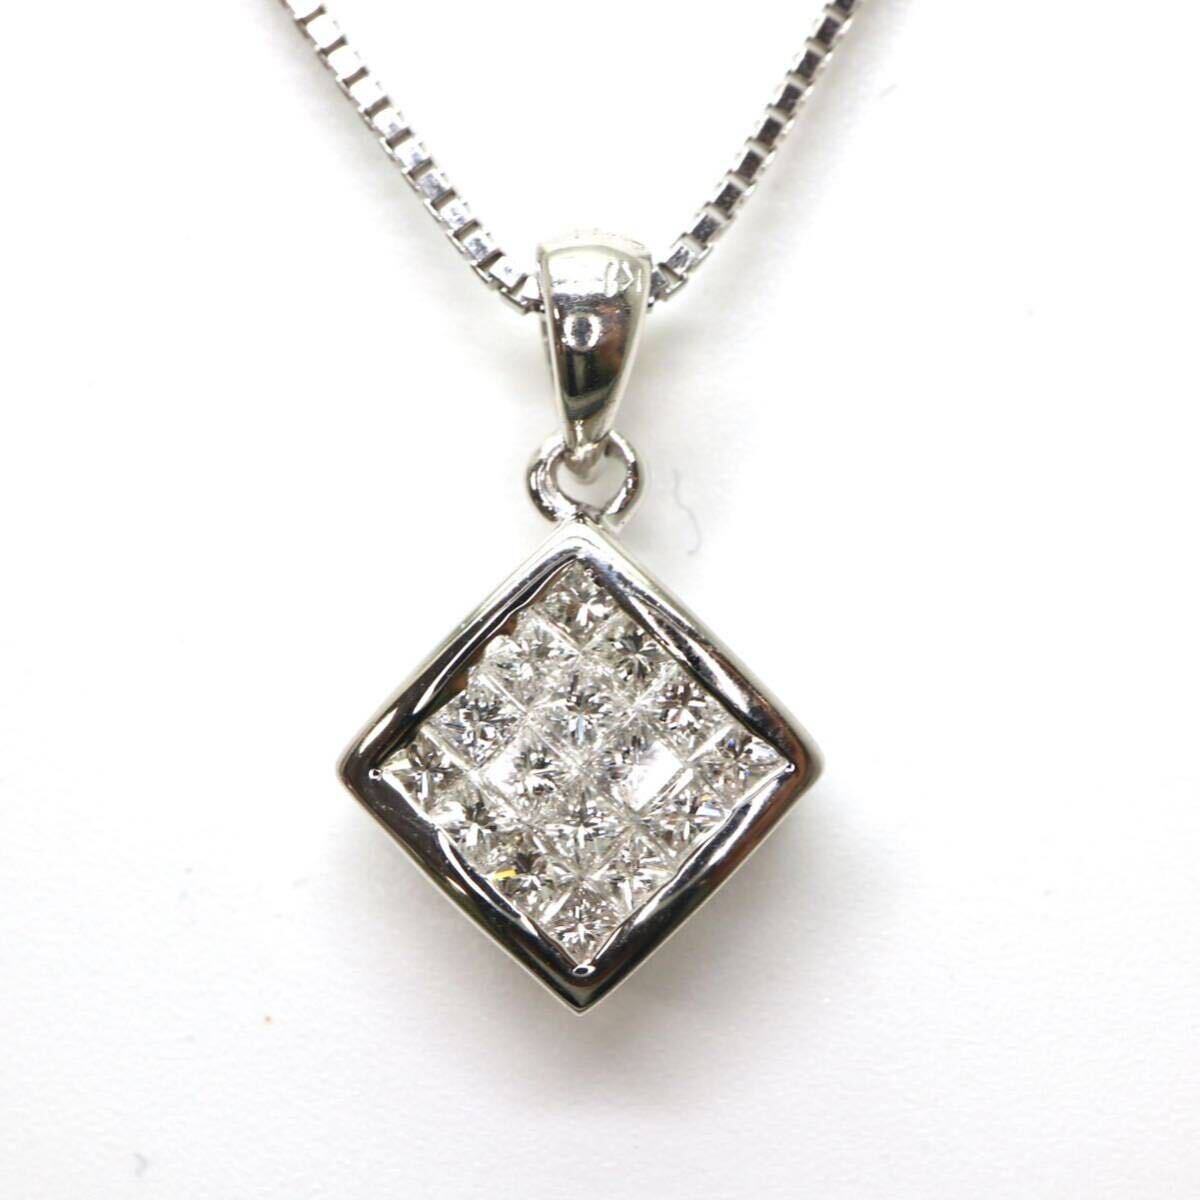 ◆K18 天然ダイヤモンドネックレス◆M 約4.6g 約45.0cm diamond necklace jewelry ジュエリー ED7/ED7の画像1